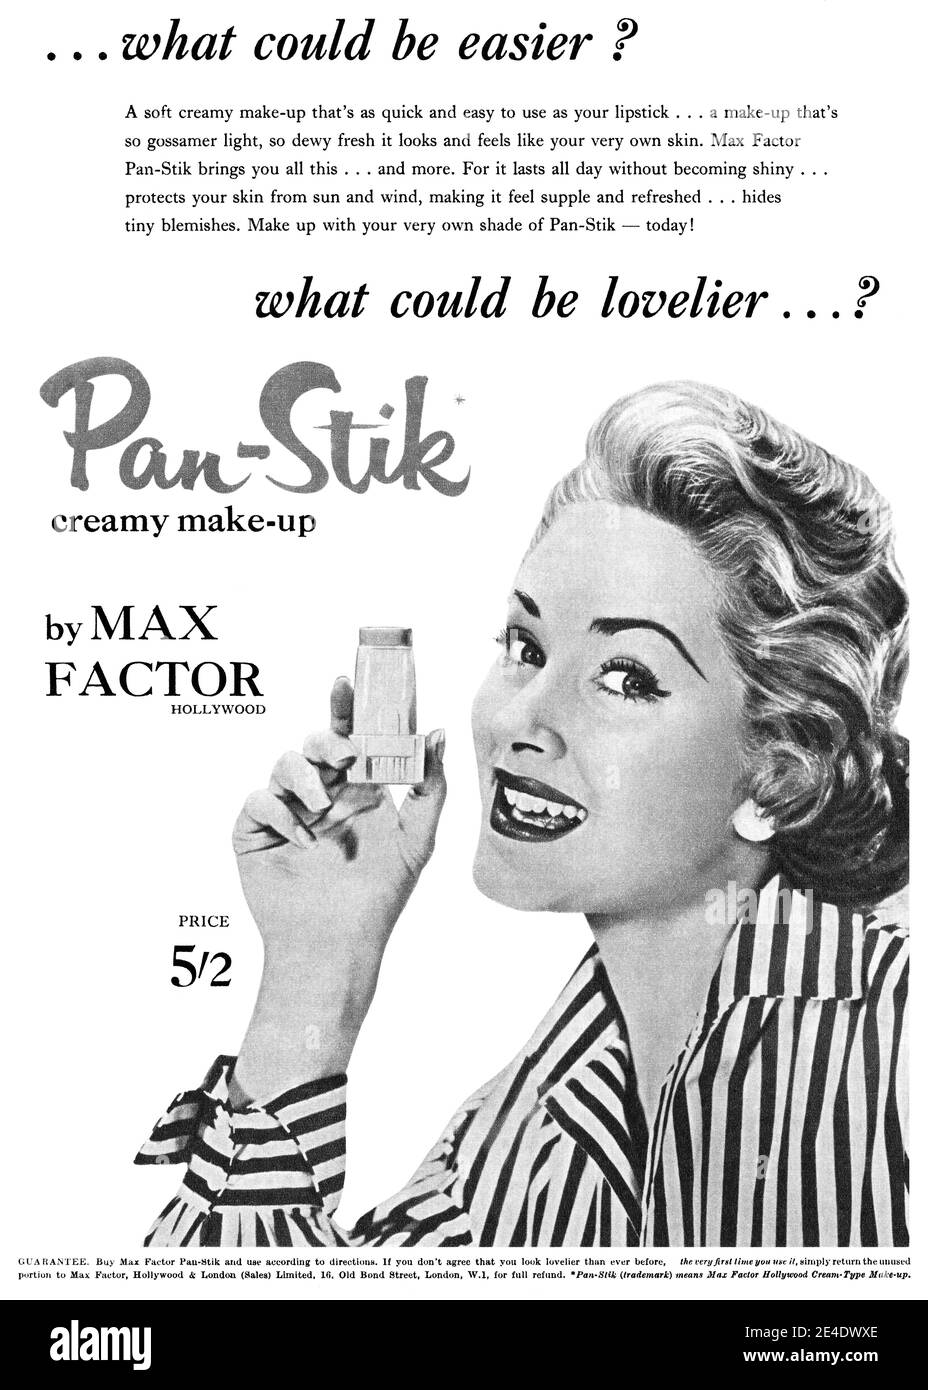 1955 British advertisement for Max Factor Pan-Stik makeup. Stock Photo